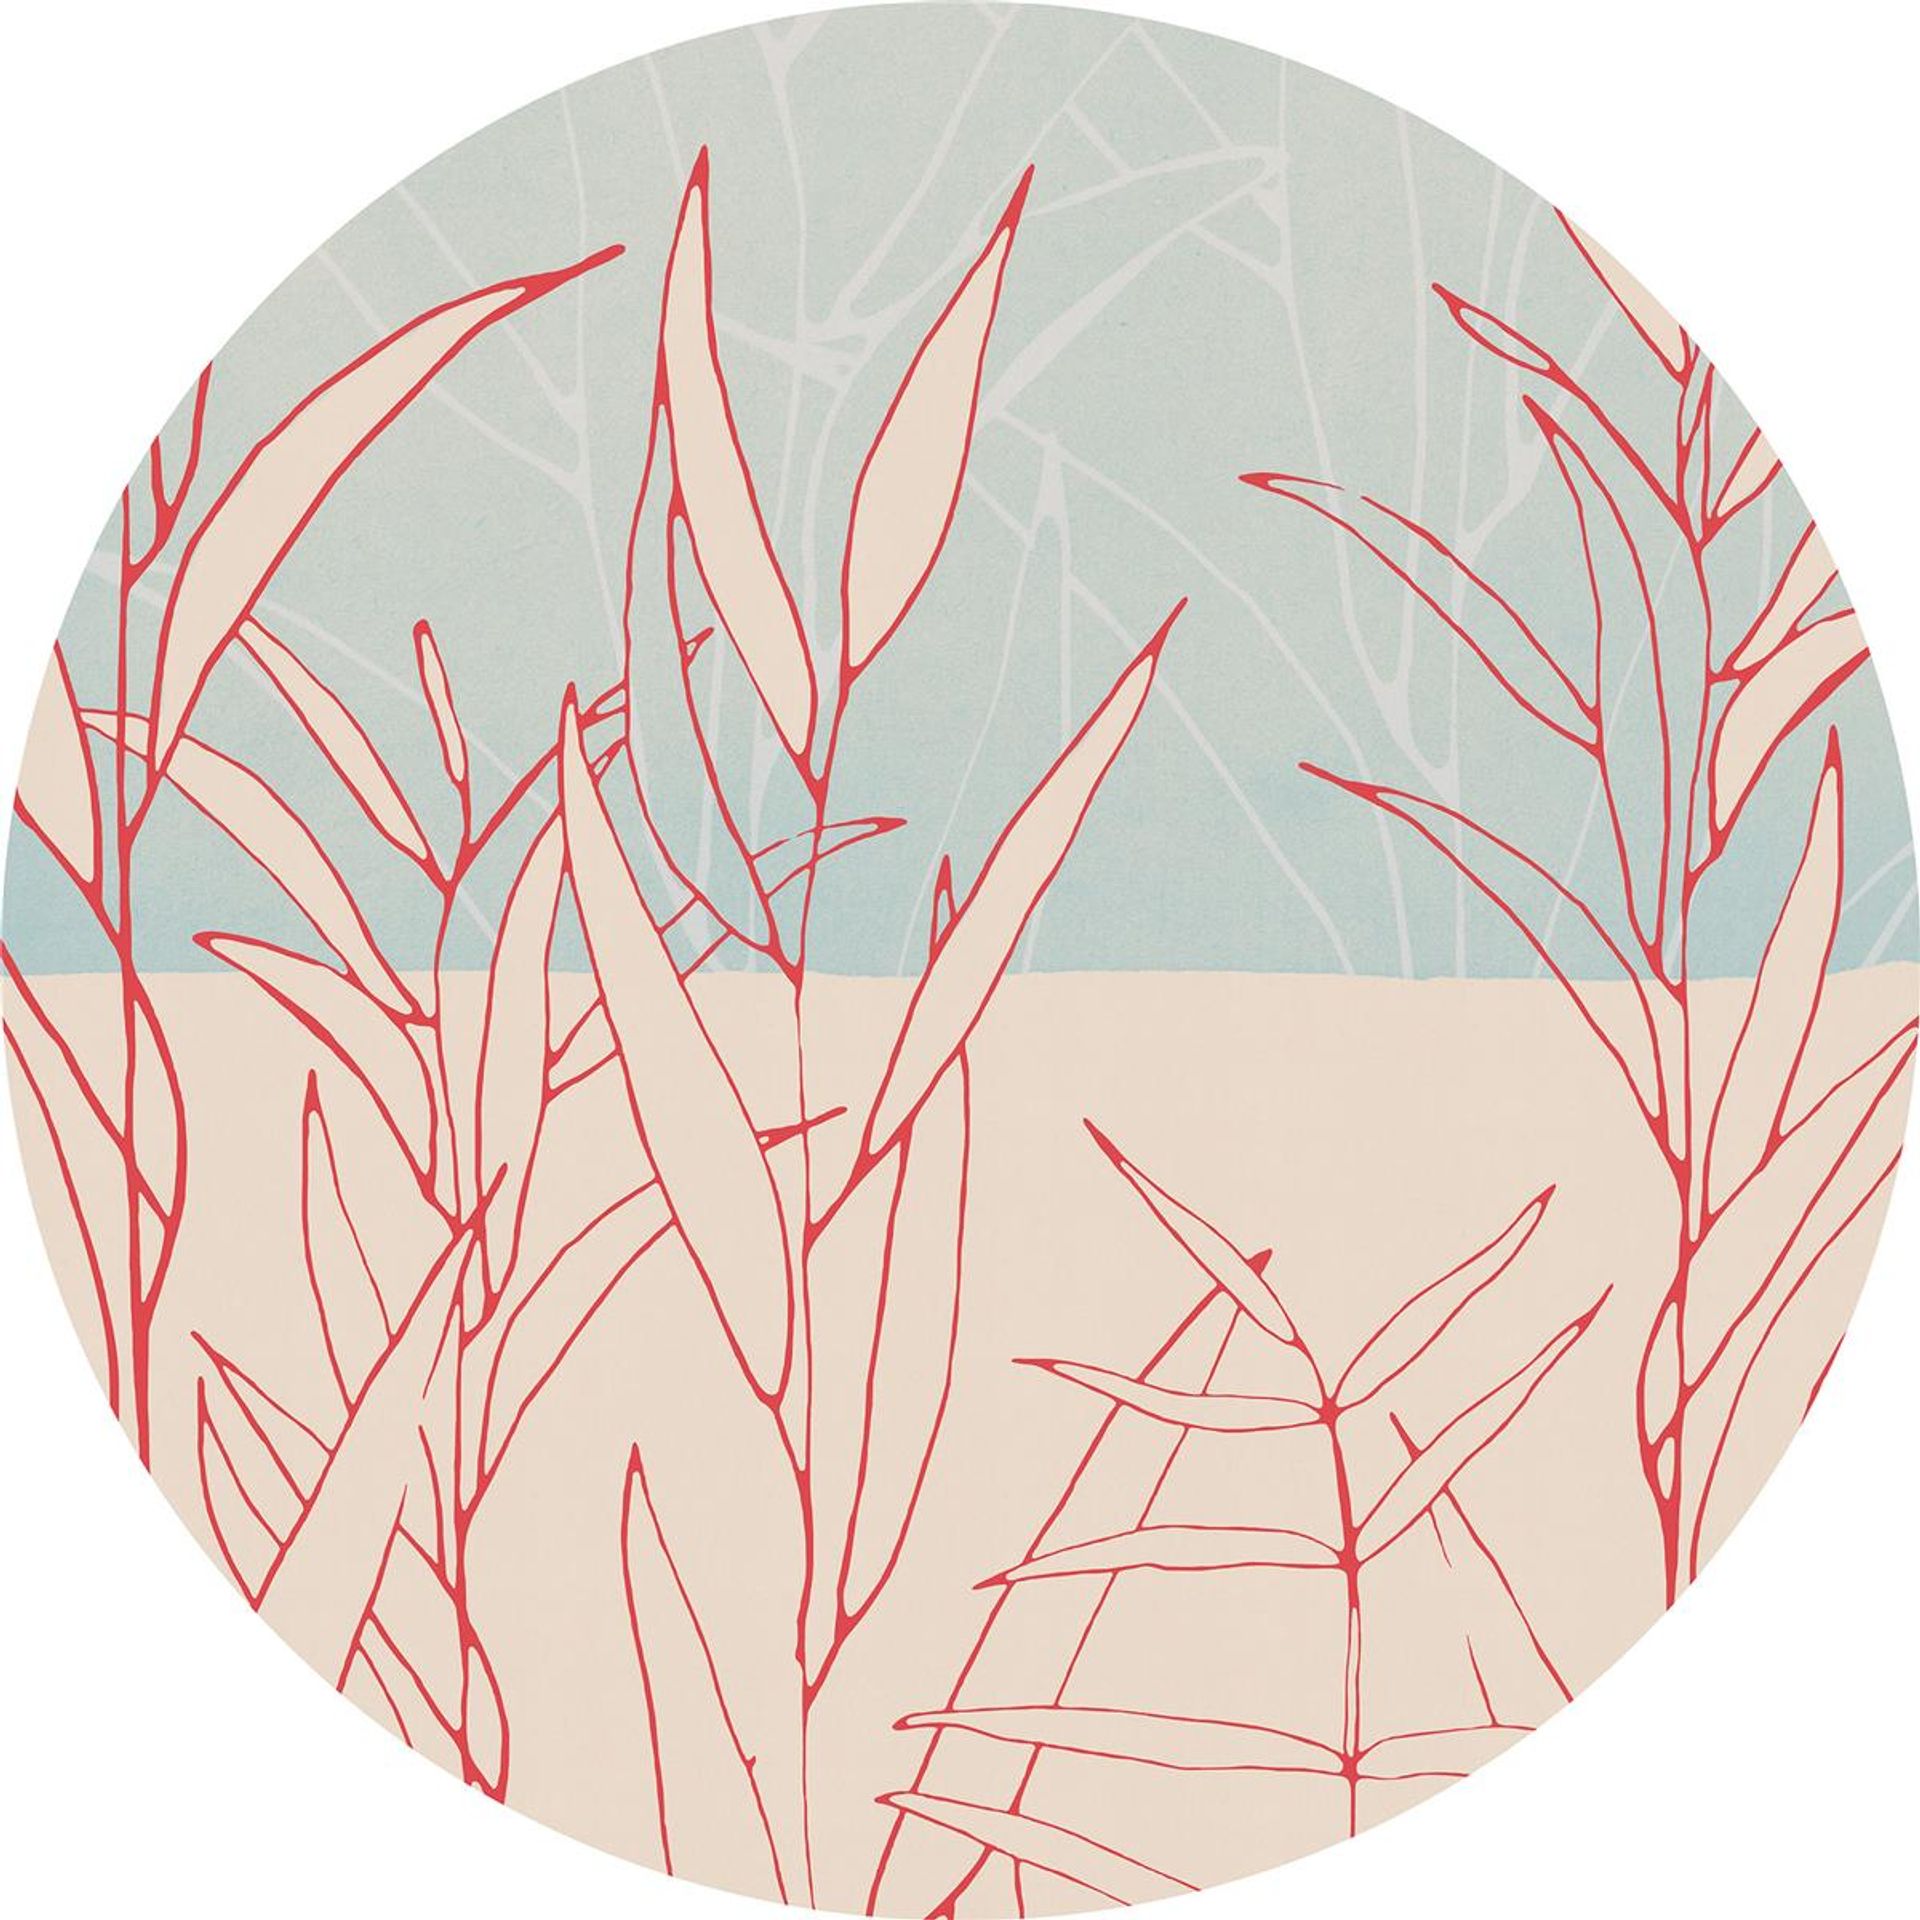 Selbstklebende Vlies Fototapete/Wandtattoo - Grassland - Größe 125 x 125 cm